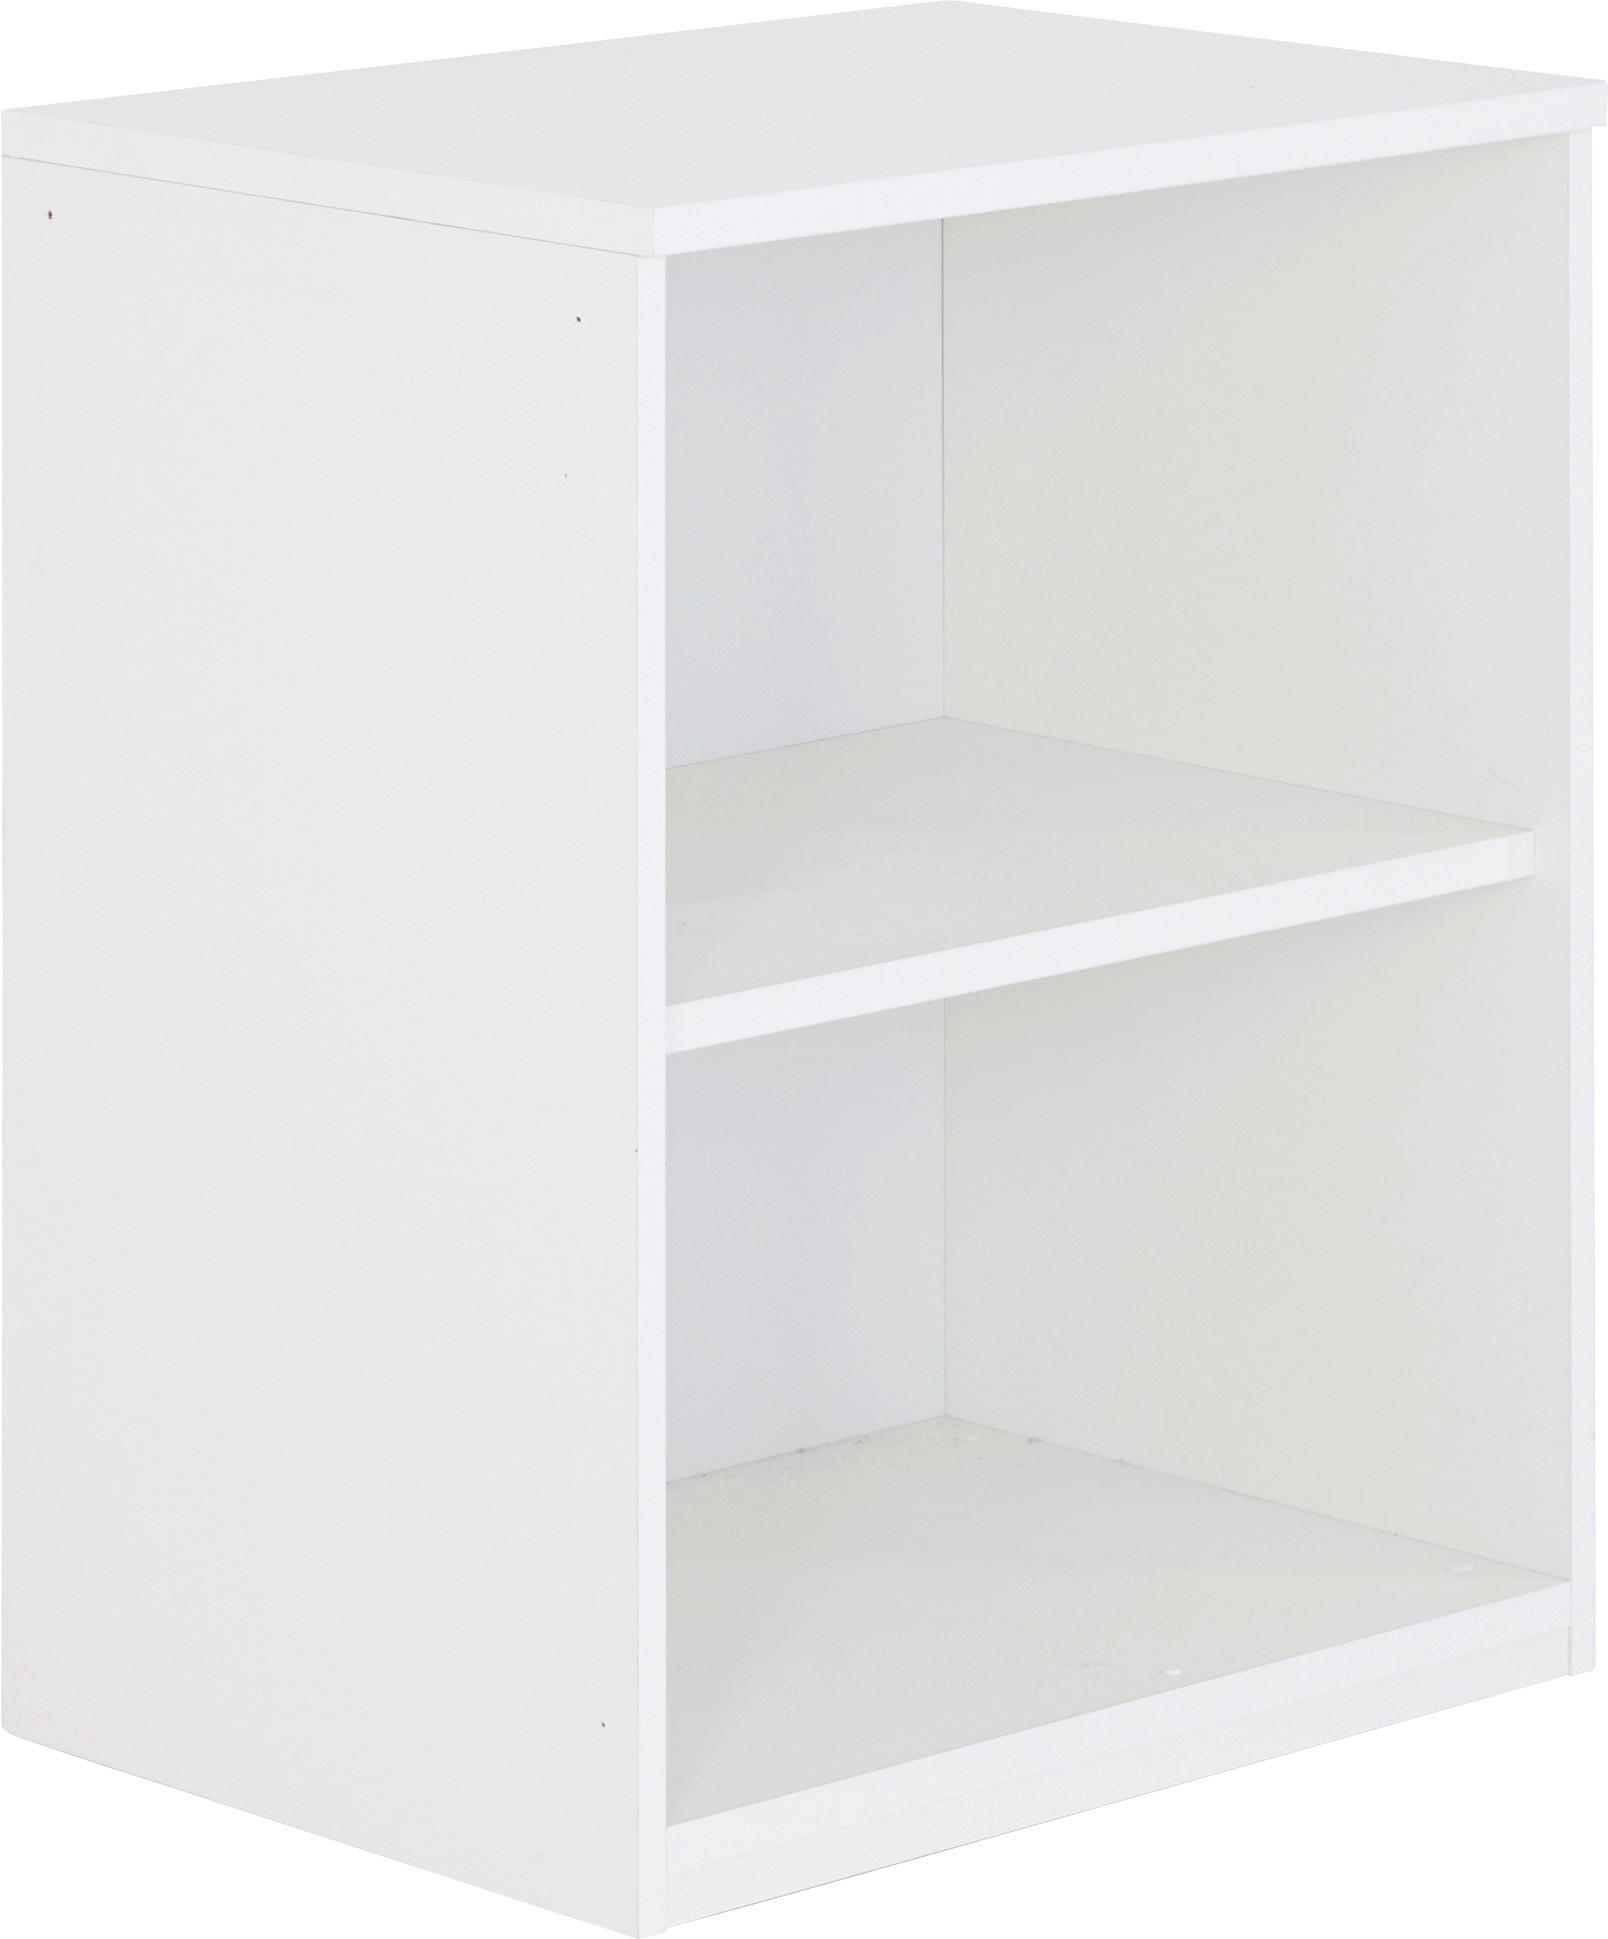 REGAL Weiß  - Weiß, Design, Holzwerkstoff (60/76,5/43cm) - Moderano